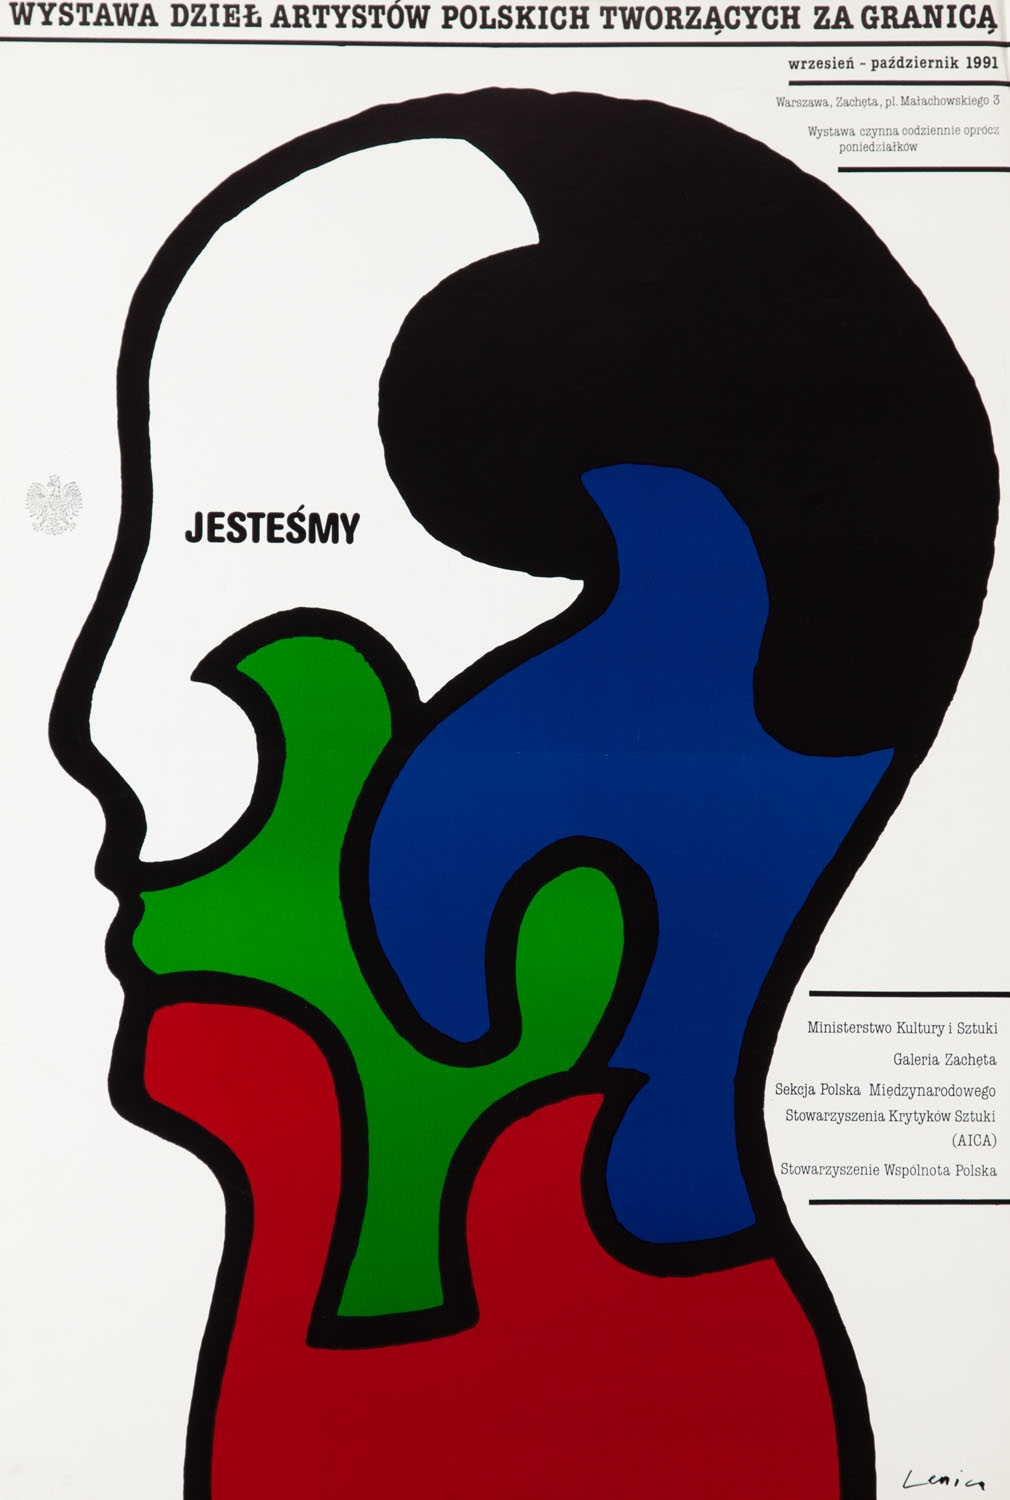 Plakat wystawy "Jesteśmy" by Jan Lenica, 1991